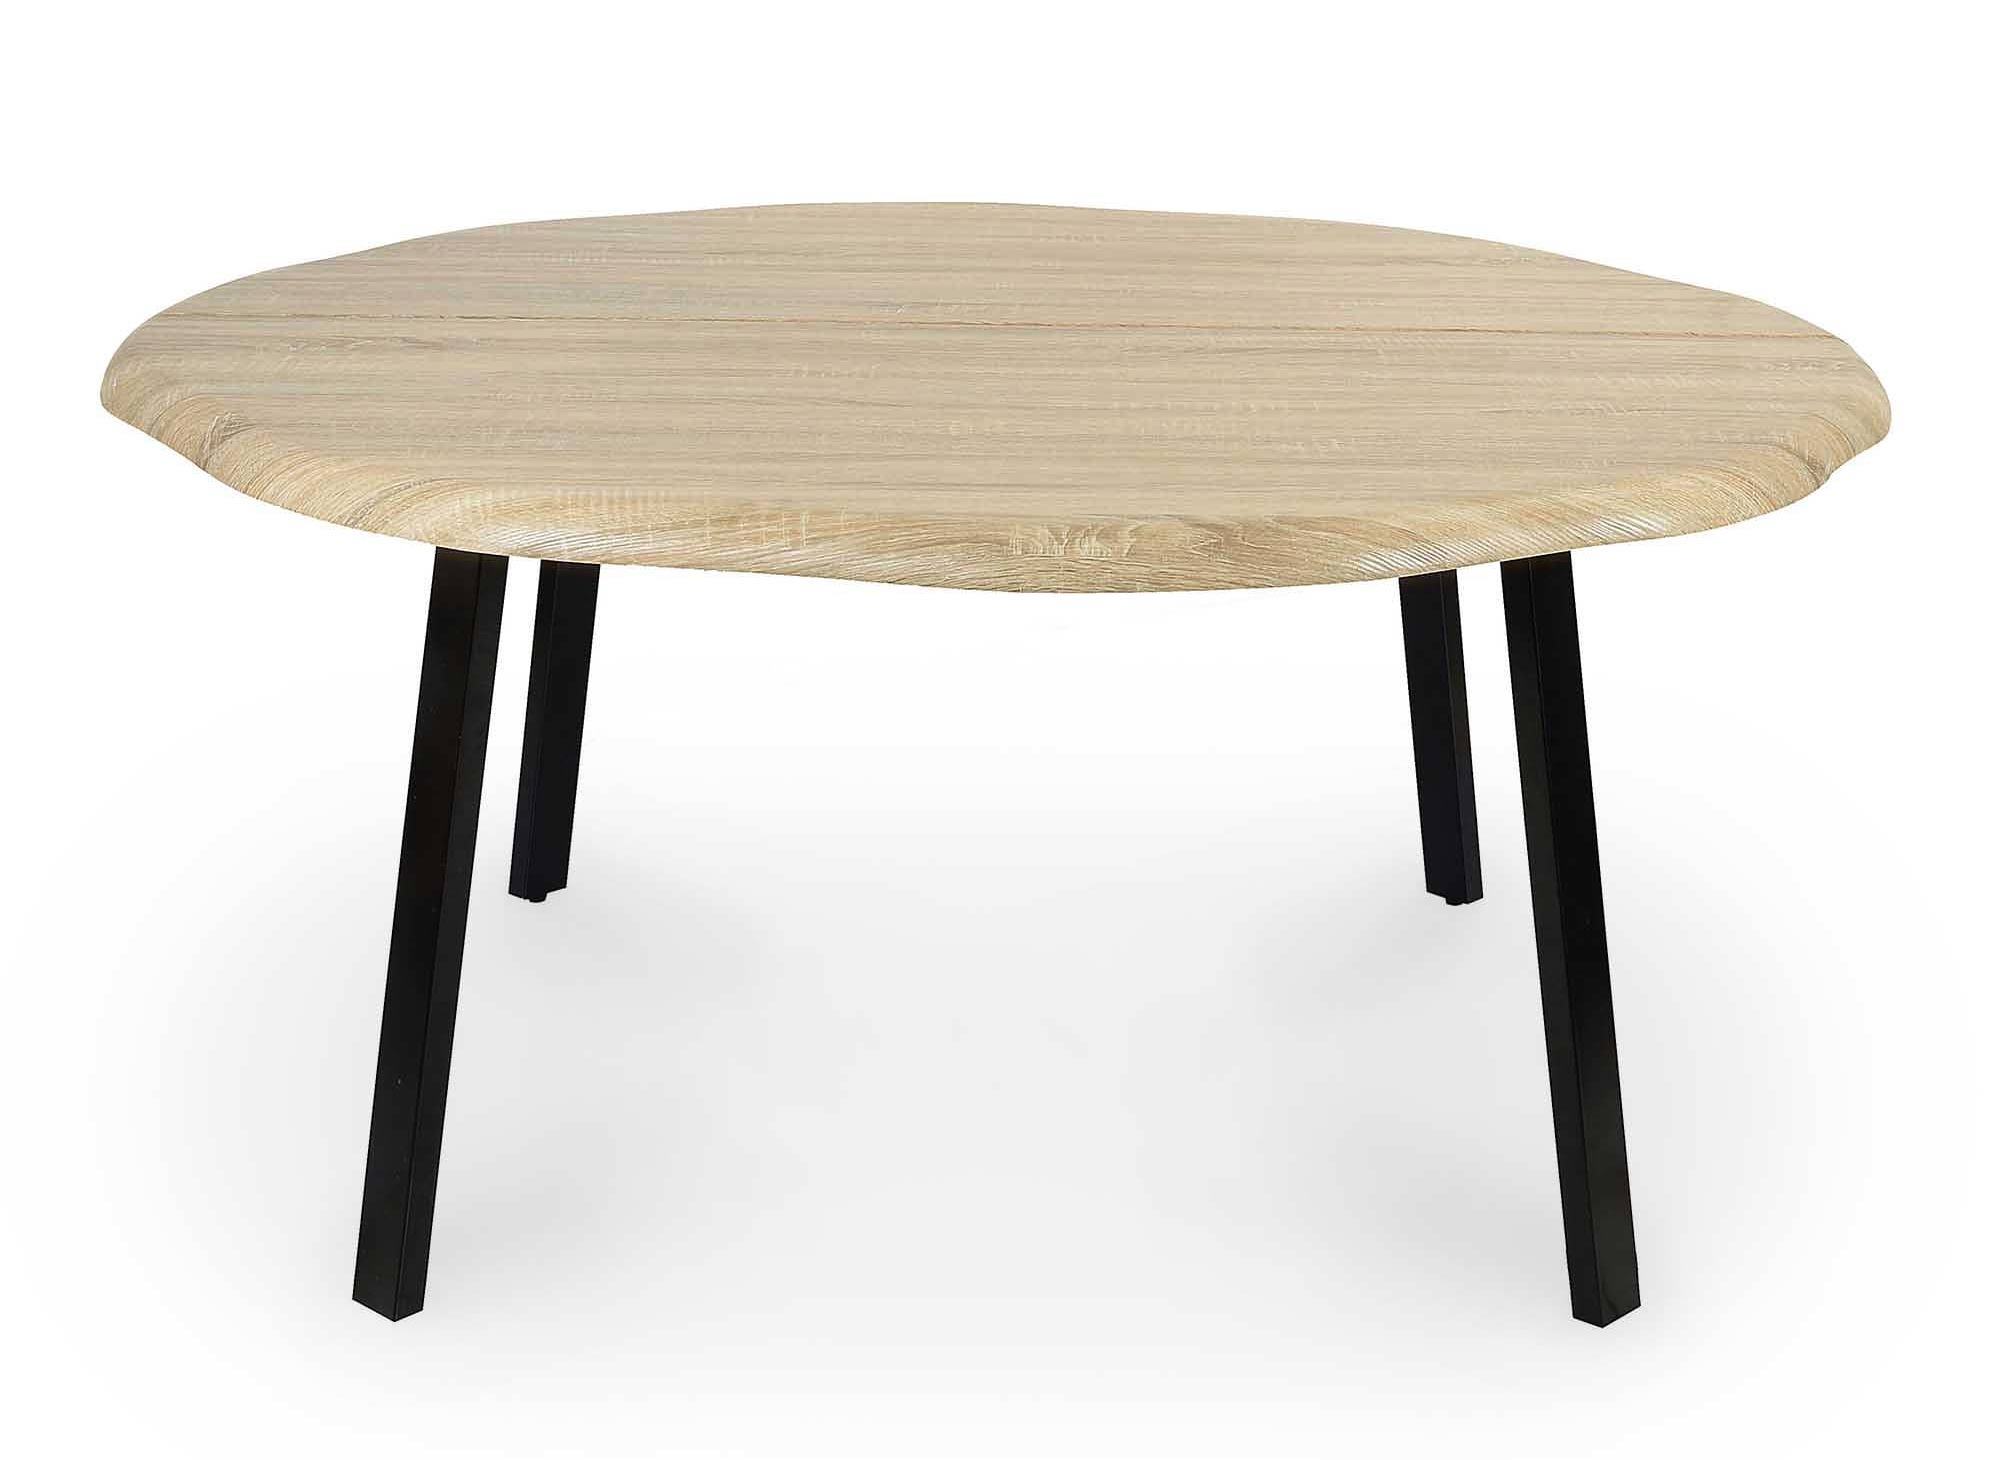 Table à manger ronde design industriel 6-8 personnes en bois DAYANA